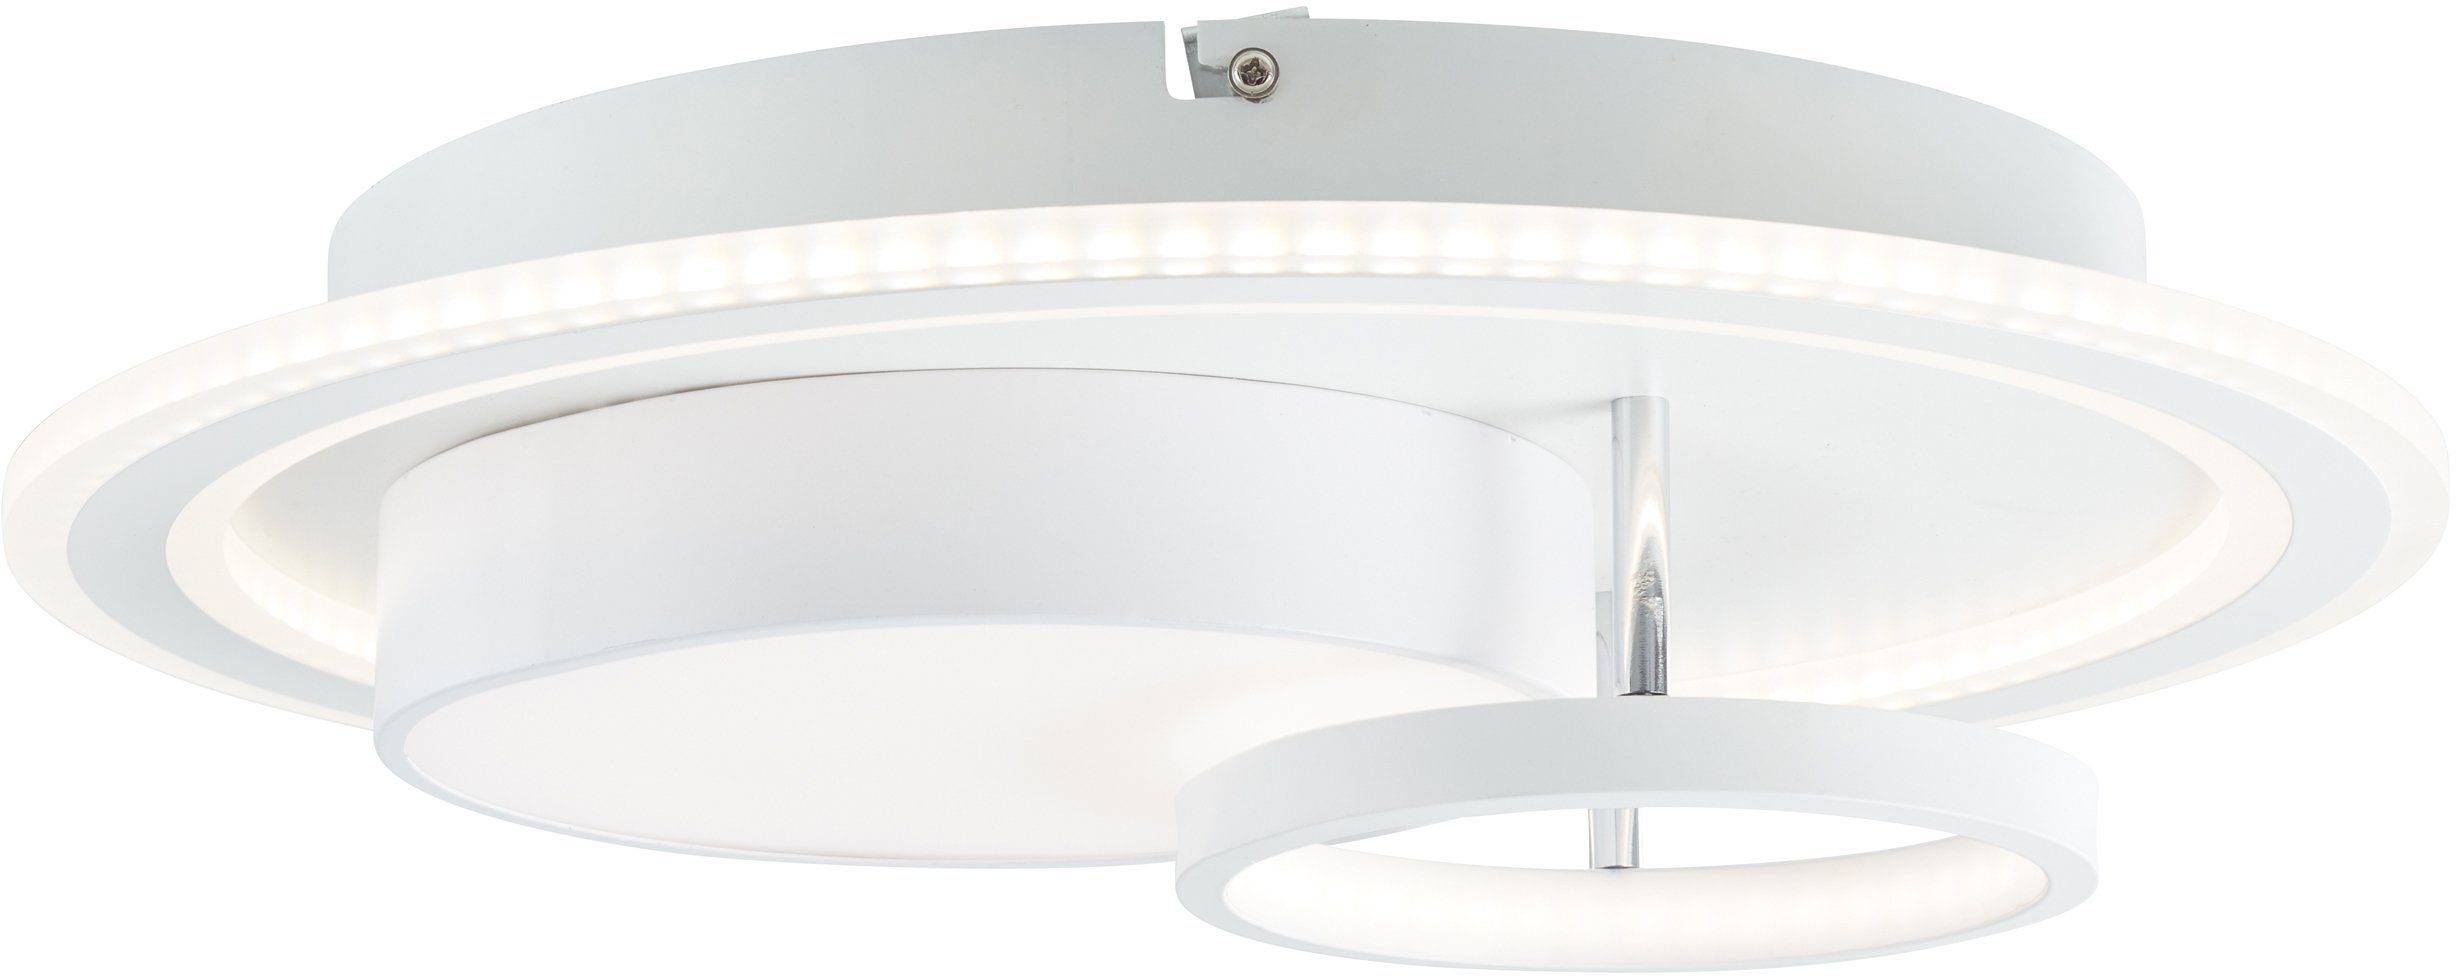 Deckenleuchte 1x Sigune LED Deckenleuchte weiß/schwarz, integrier LED 3000K, 40x40cm Lampe, Sigune, Brilliant